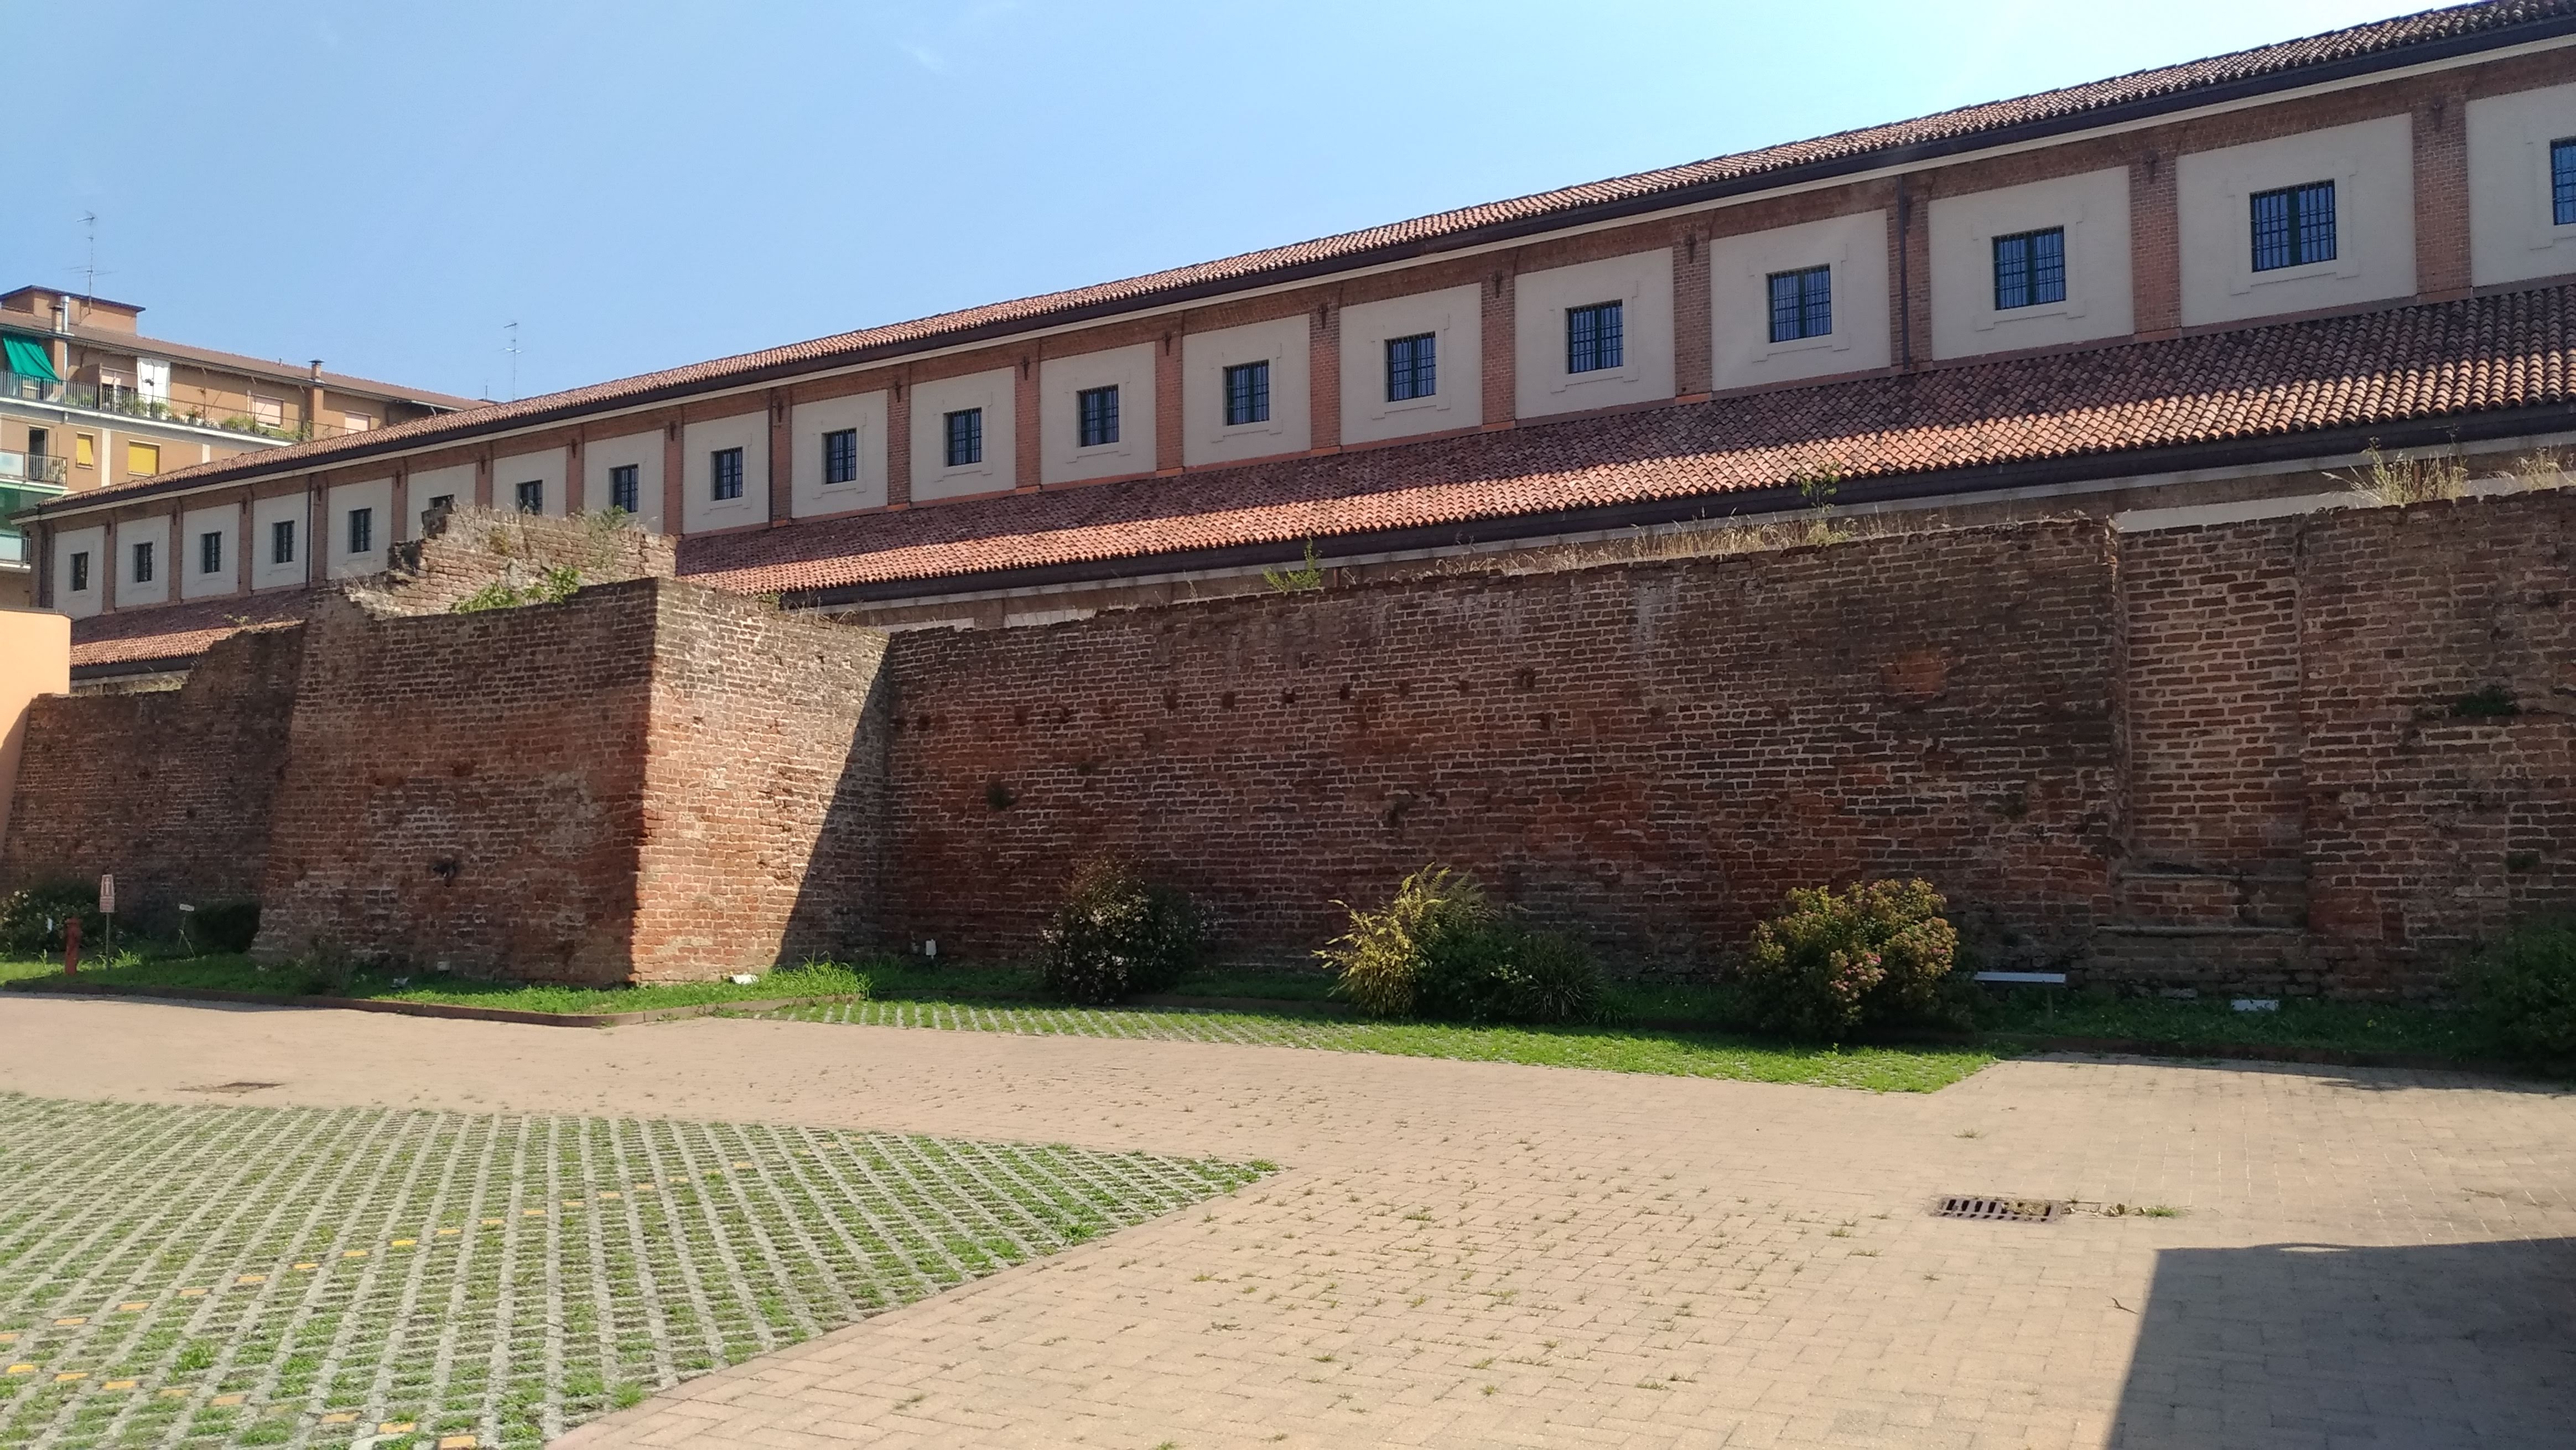 Antiche mura cittadine - porzione via Massarotti (cinta muraria) - Cremona (CR)  (XVI)